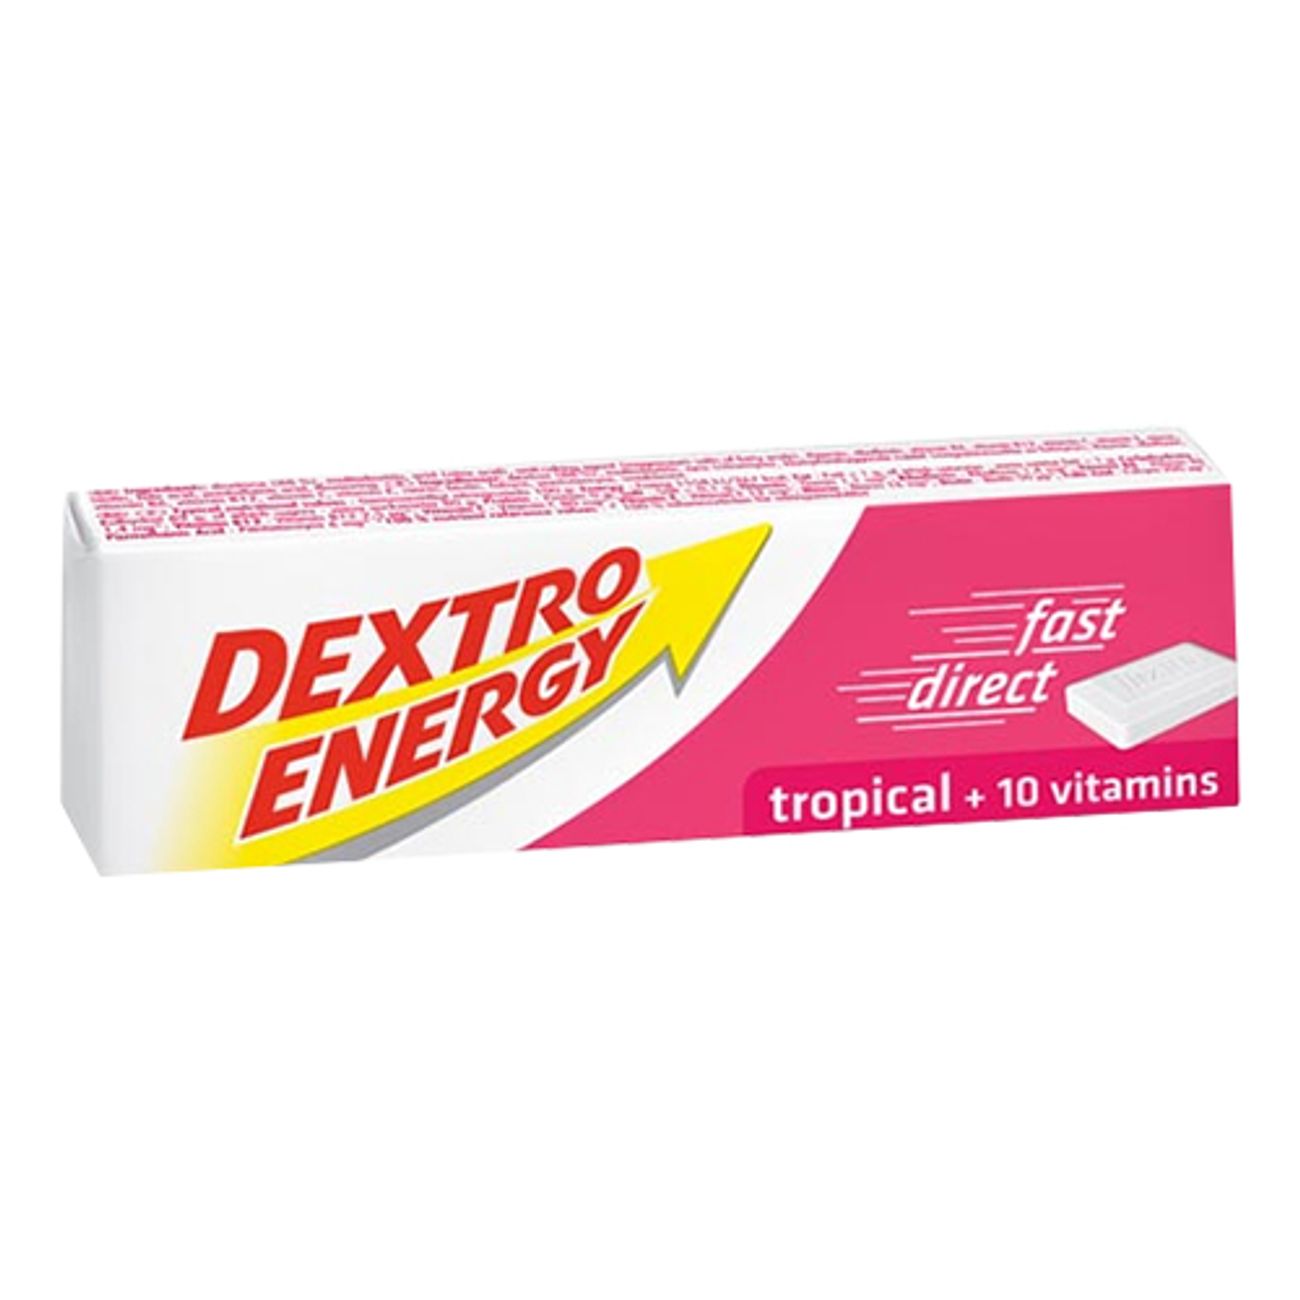 dextro-energy-tropical-1